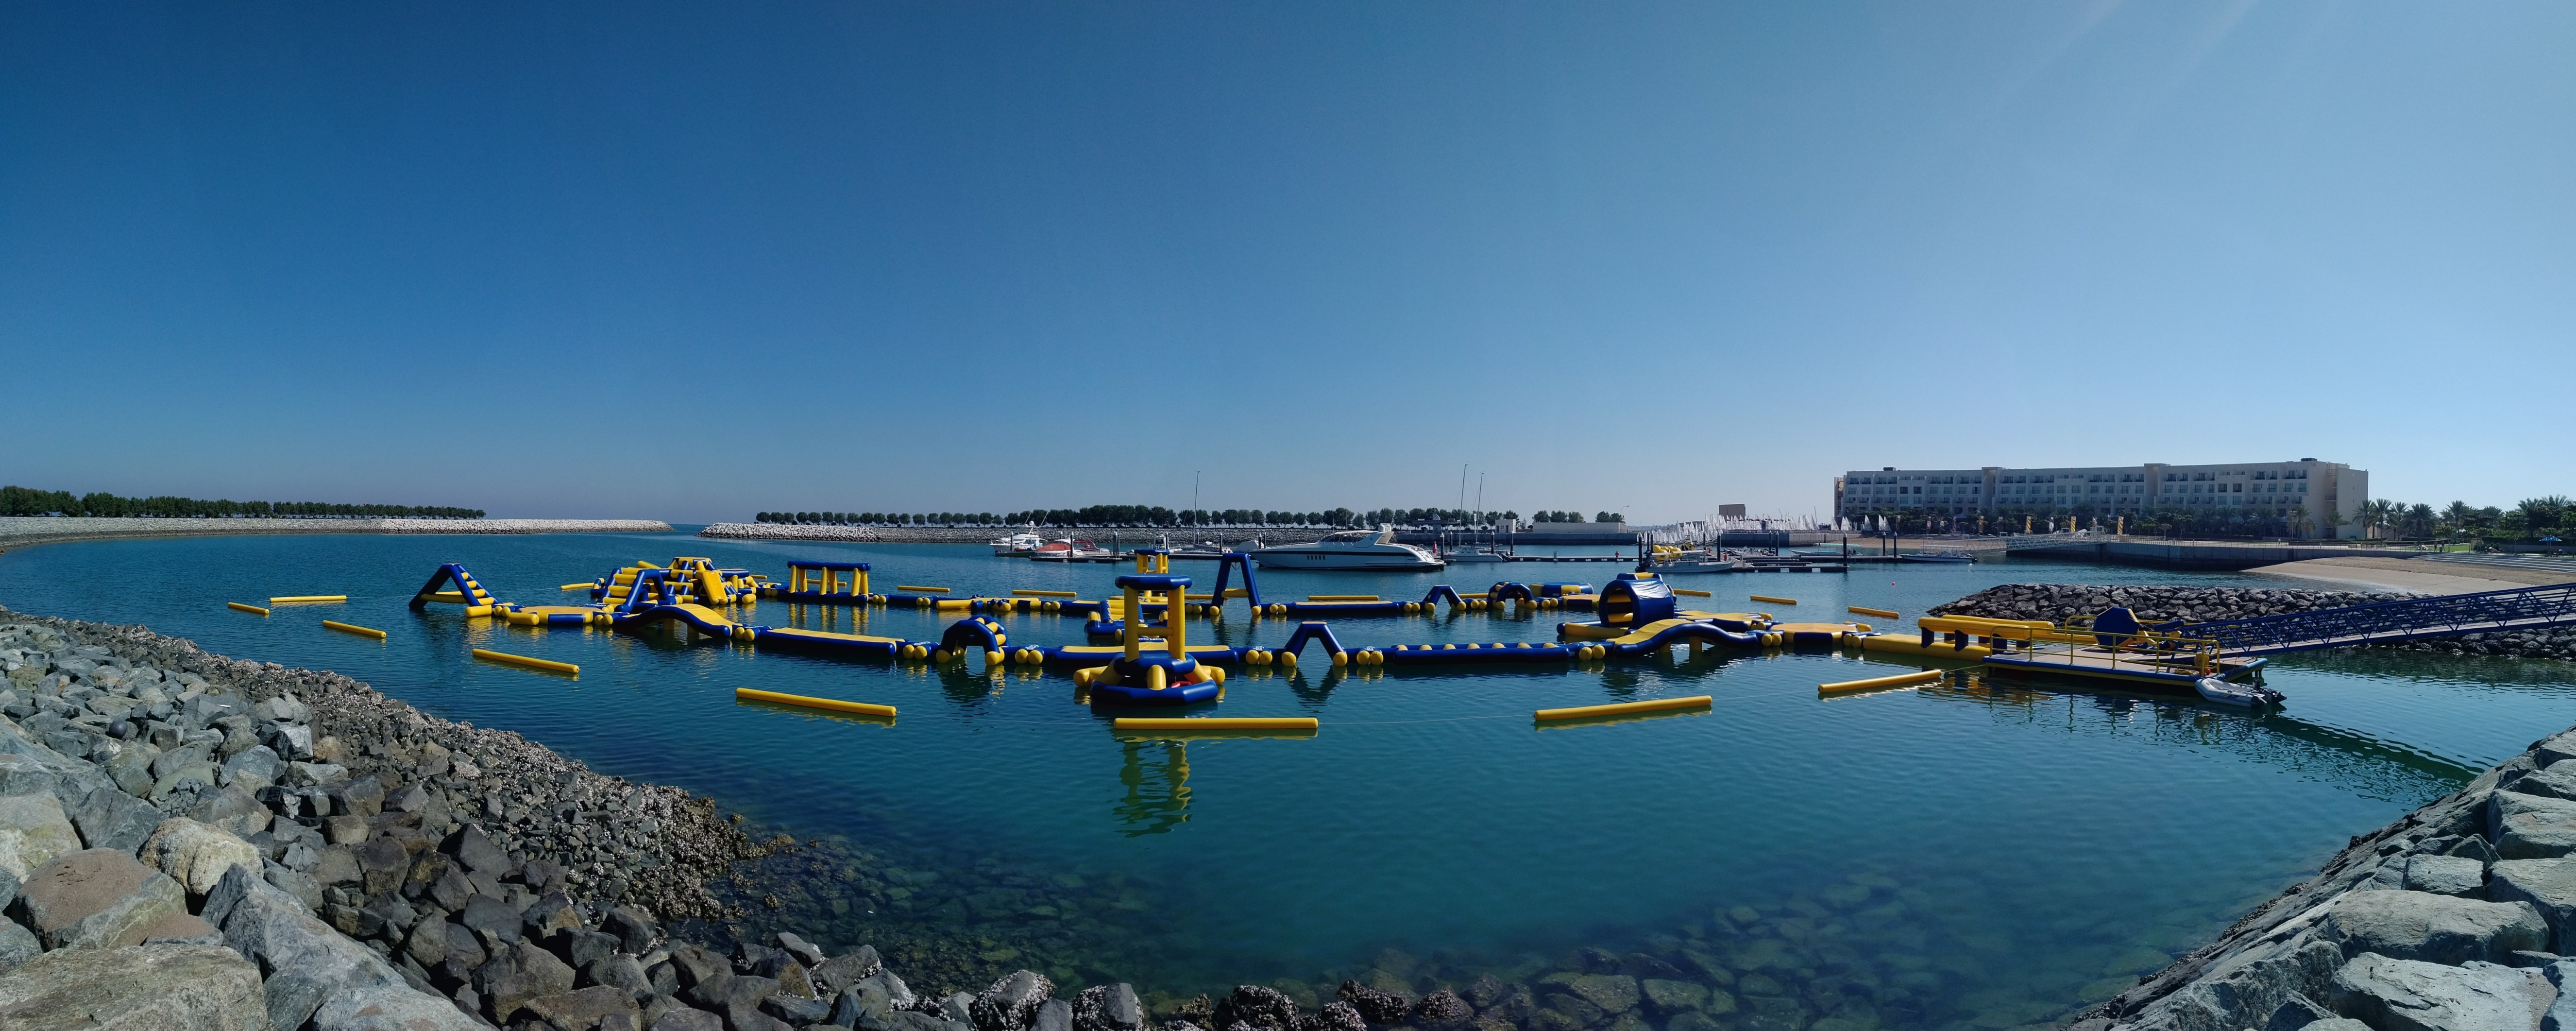 MRM- Floating Aqua Park